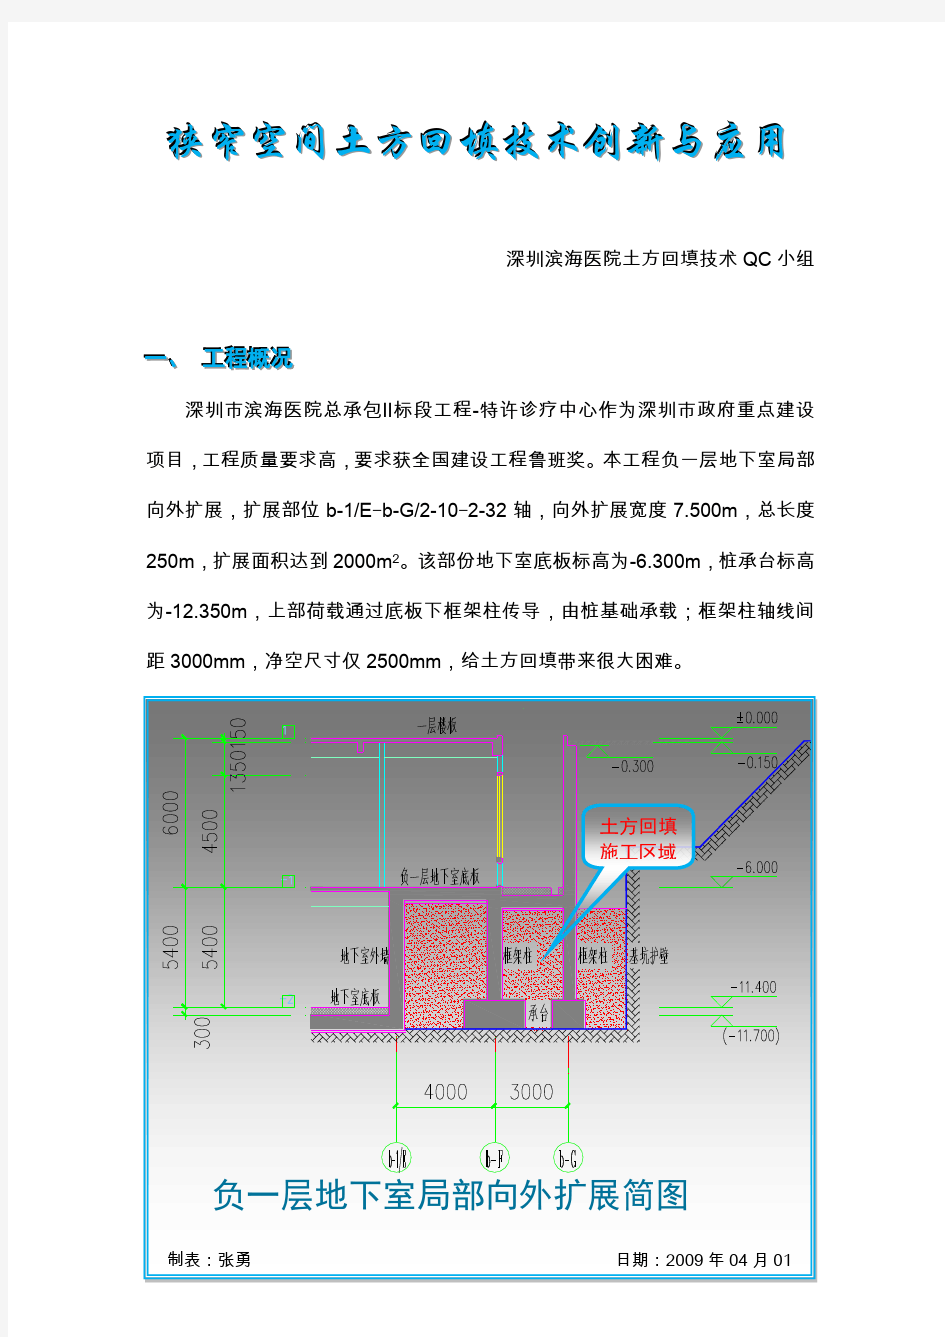 15中国建筑第二工程局有限公司深圳分公司深圳滨海医院土方回填技术QC小组